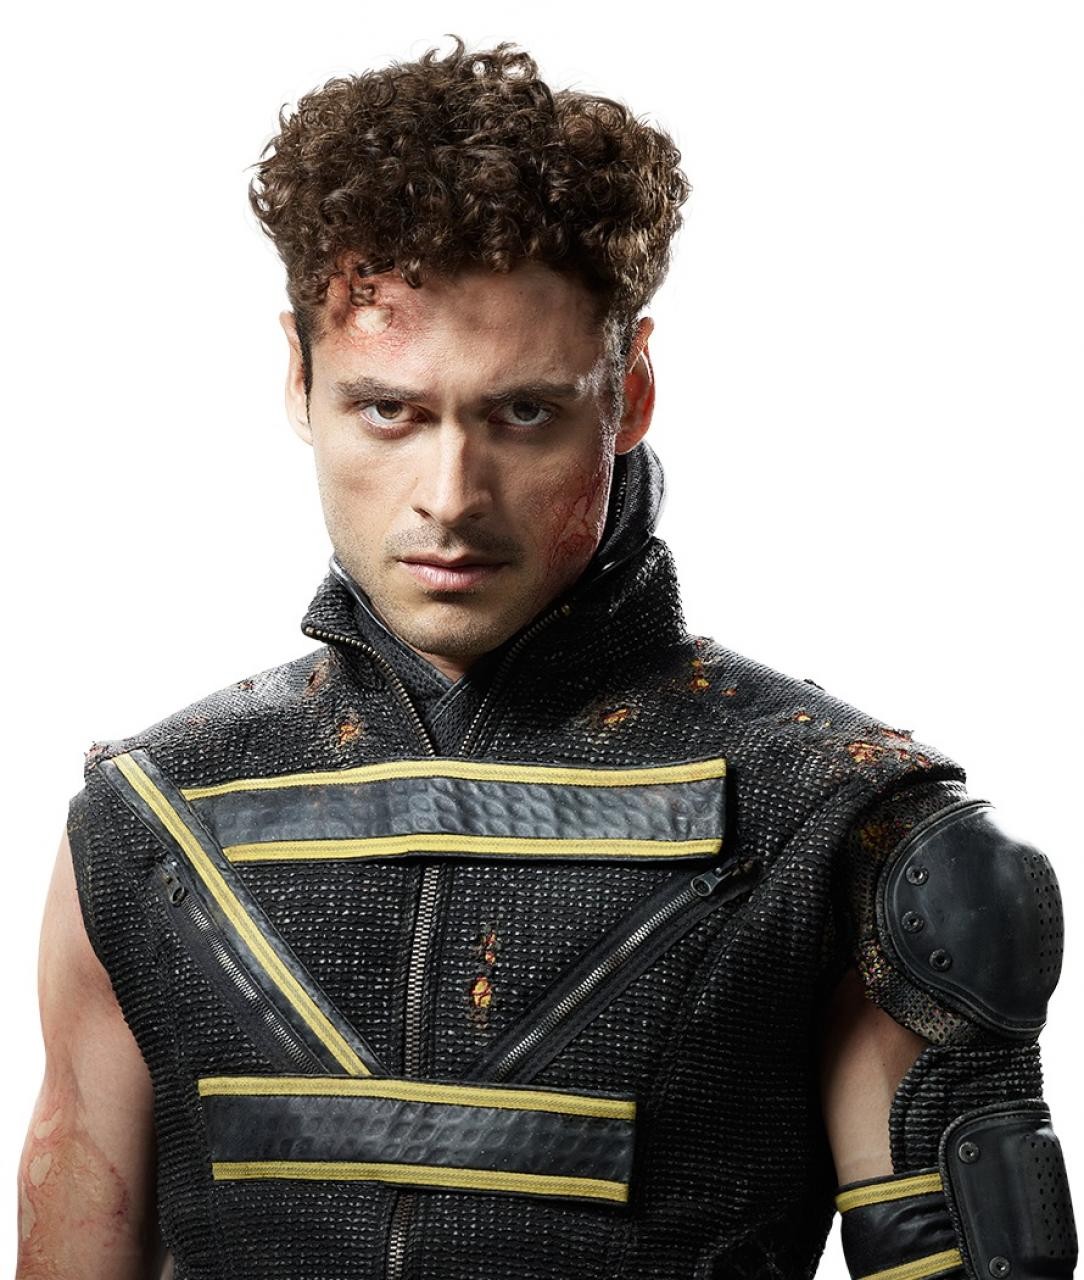 Adan Canto satrs as Roberto da Costa/Sunspot in 20th Century Fox's X-Men: Days of Future Past (2014)